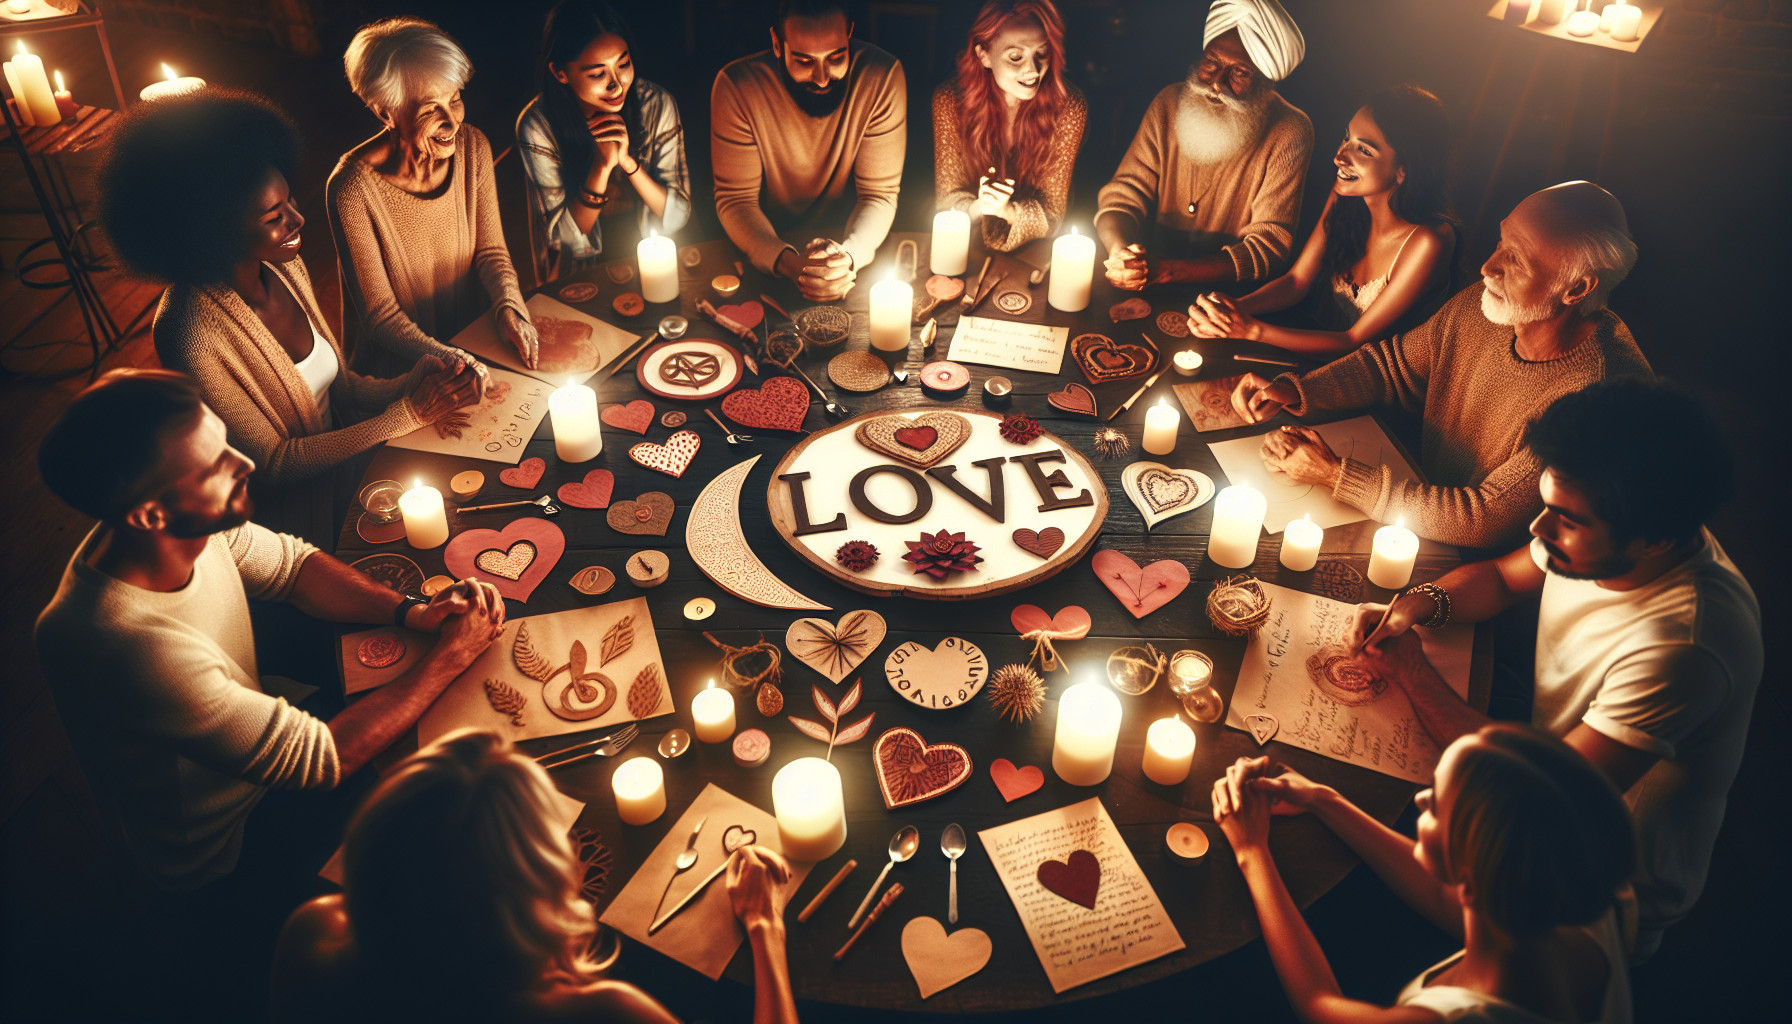 Rituales De Amor: Atrayendo Relaciones Positivas Y Fortaleciendo Lazos